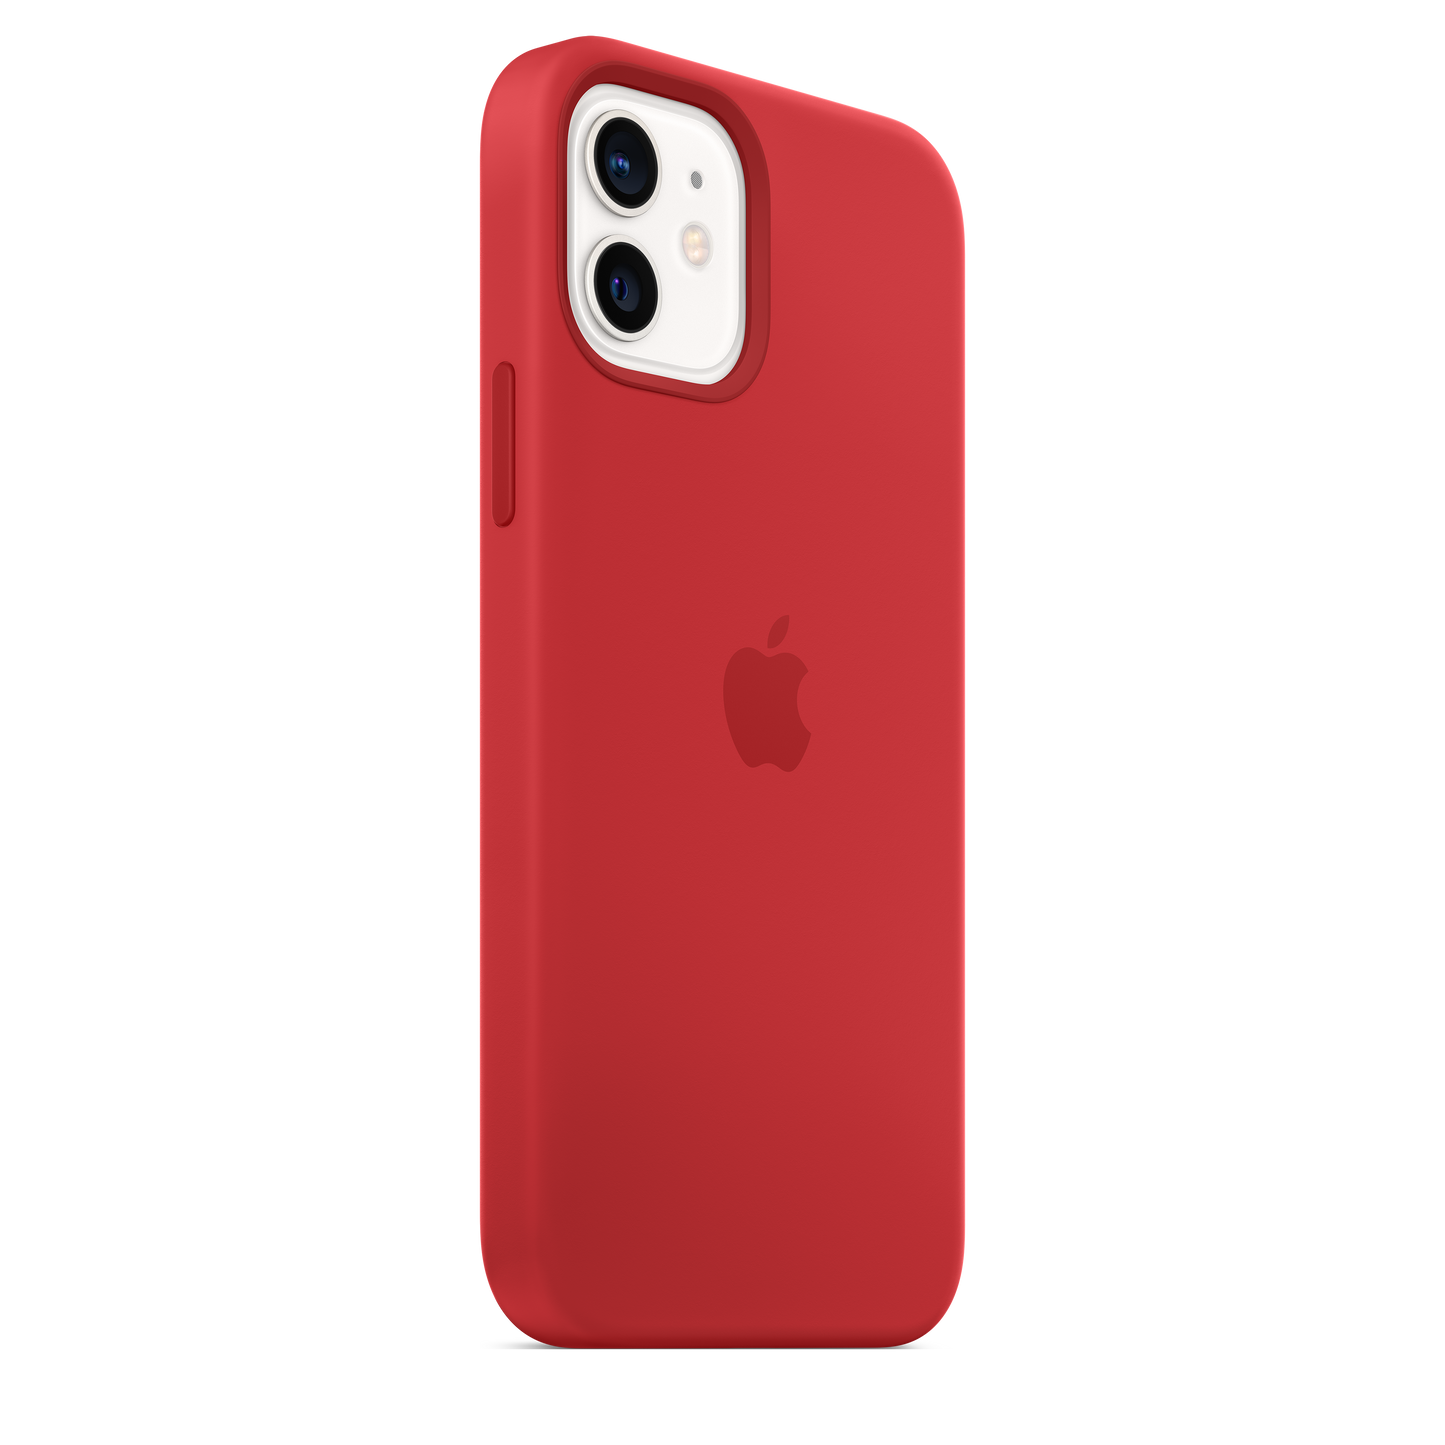 Funda de silicona con MagSafe para el iPhone 12 y iPhone 12 Pro, (PRODUCT)RED - Rossellimac